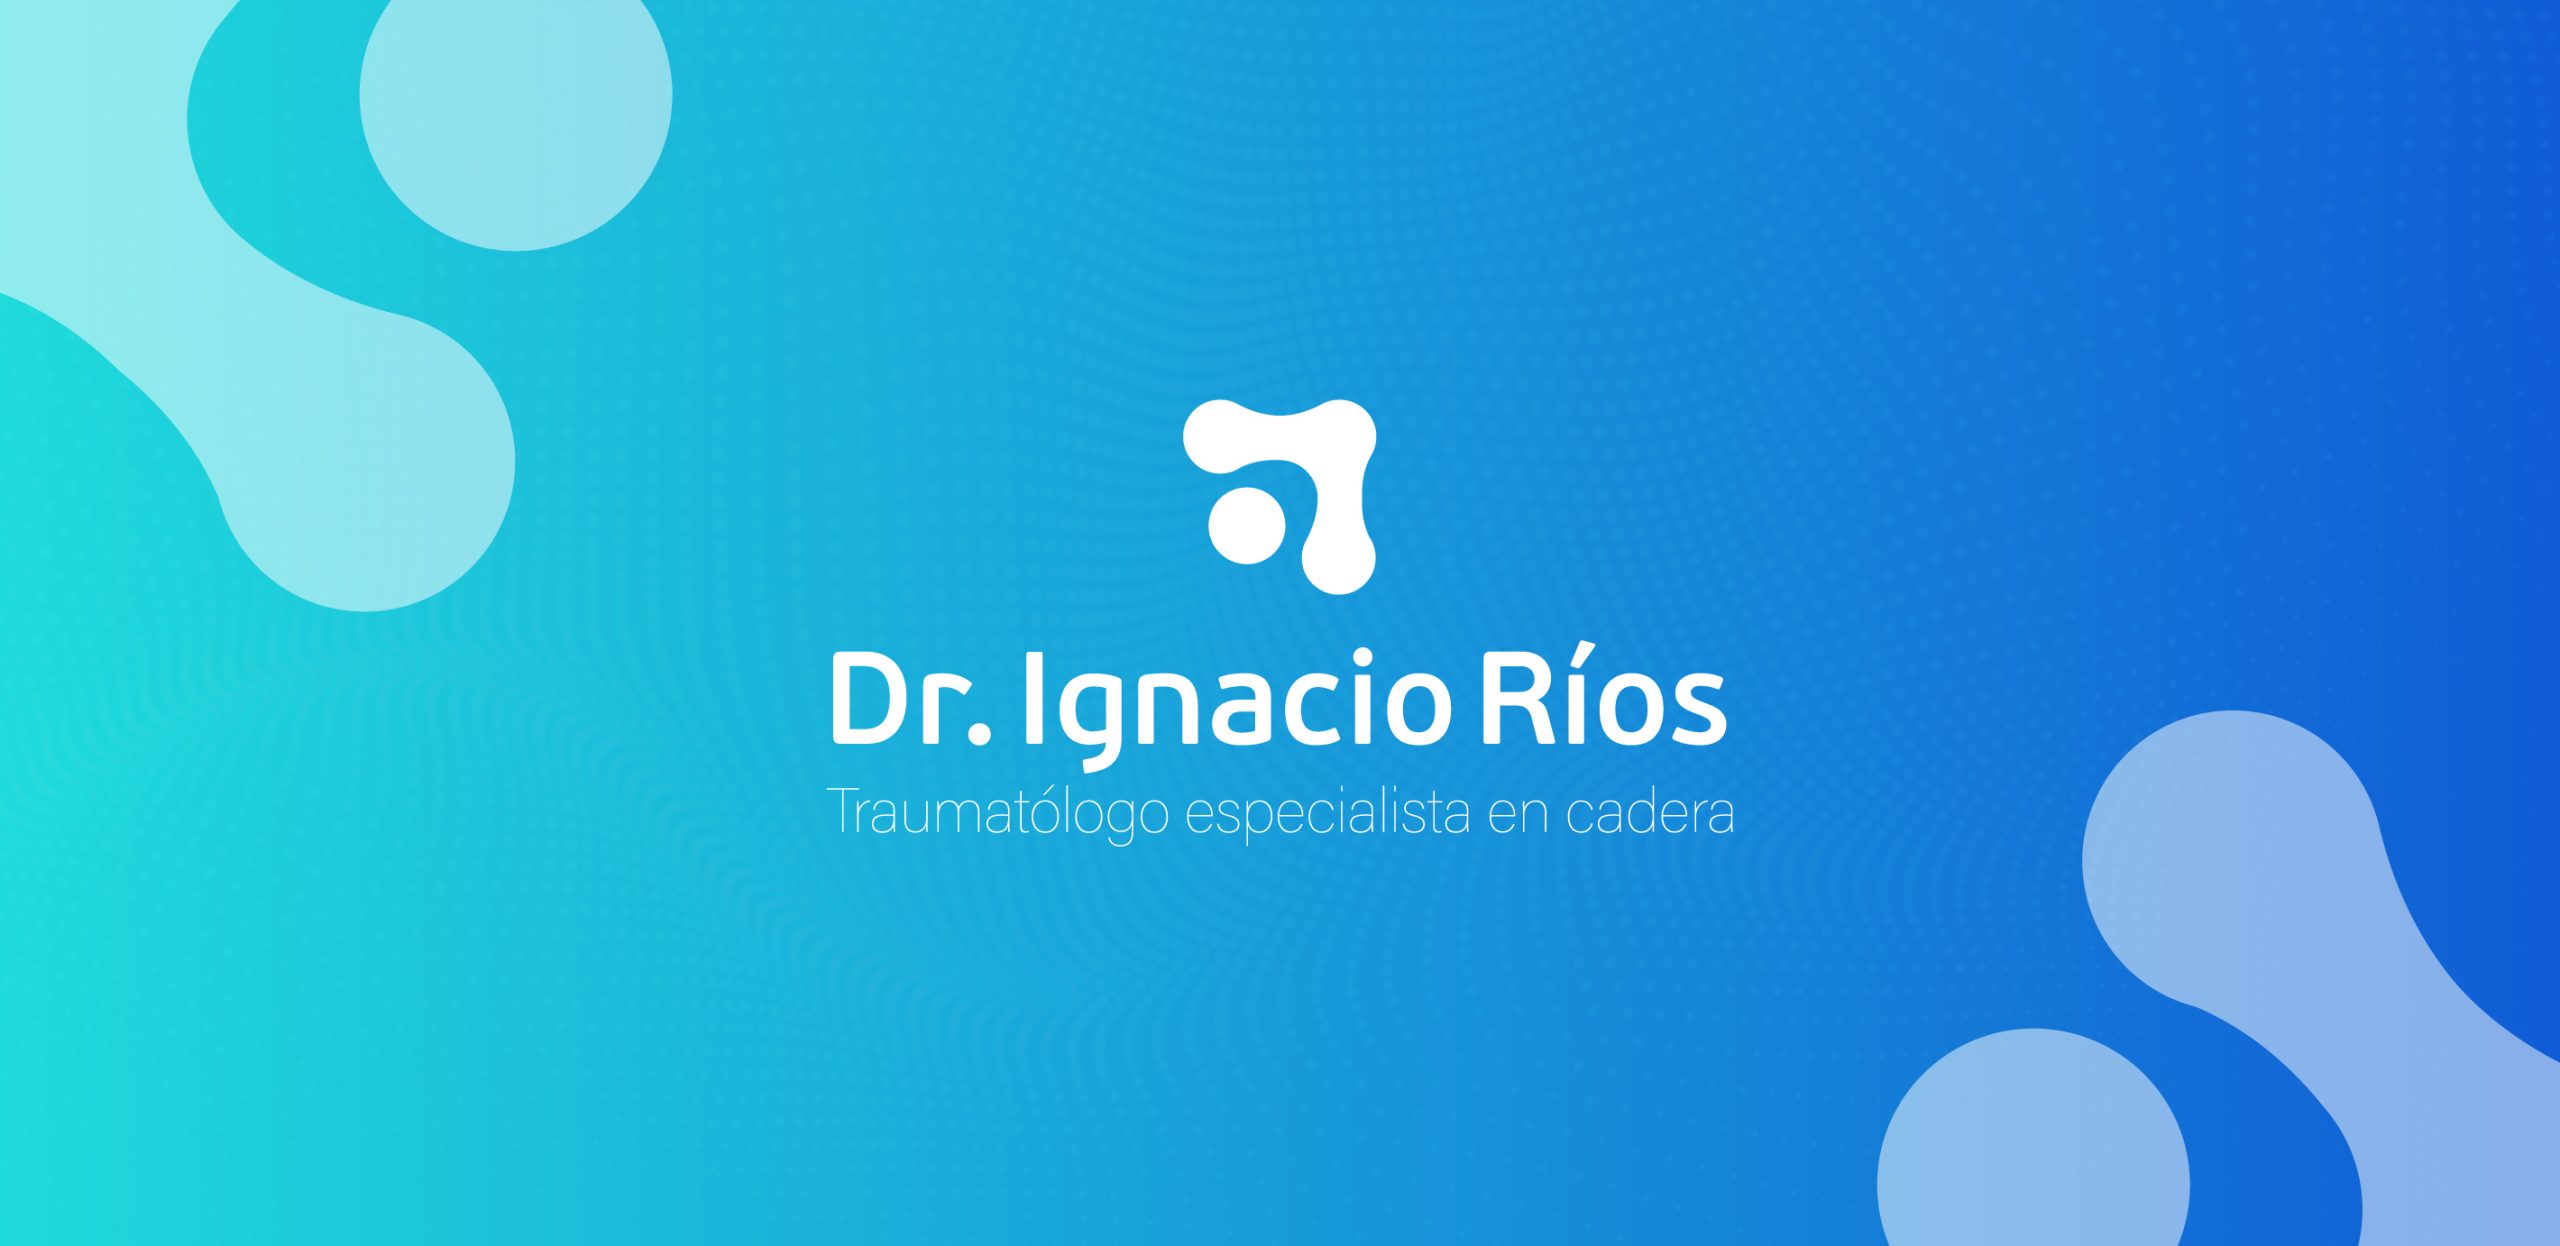 Dr. Ignacio Ríos